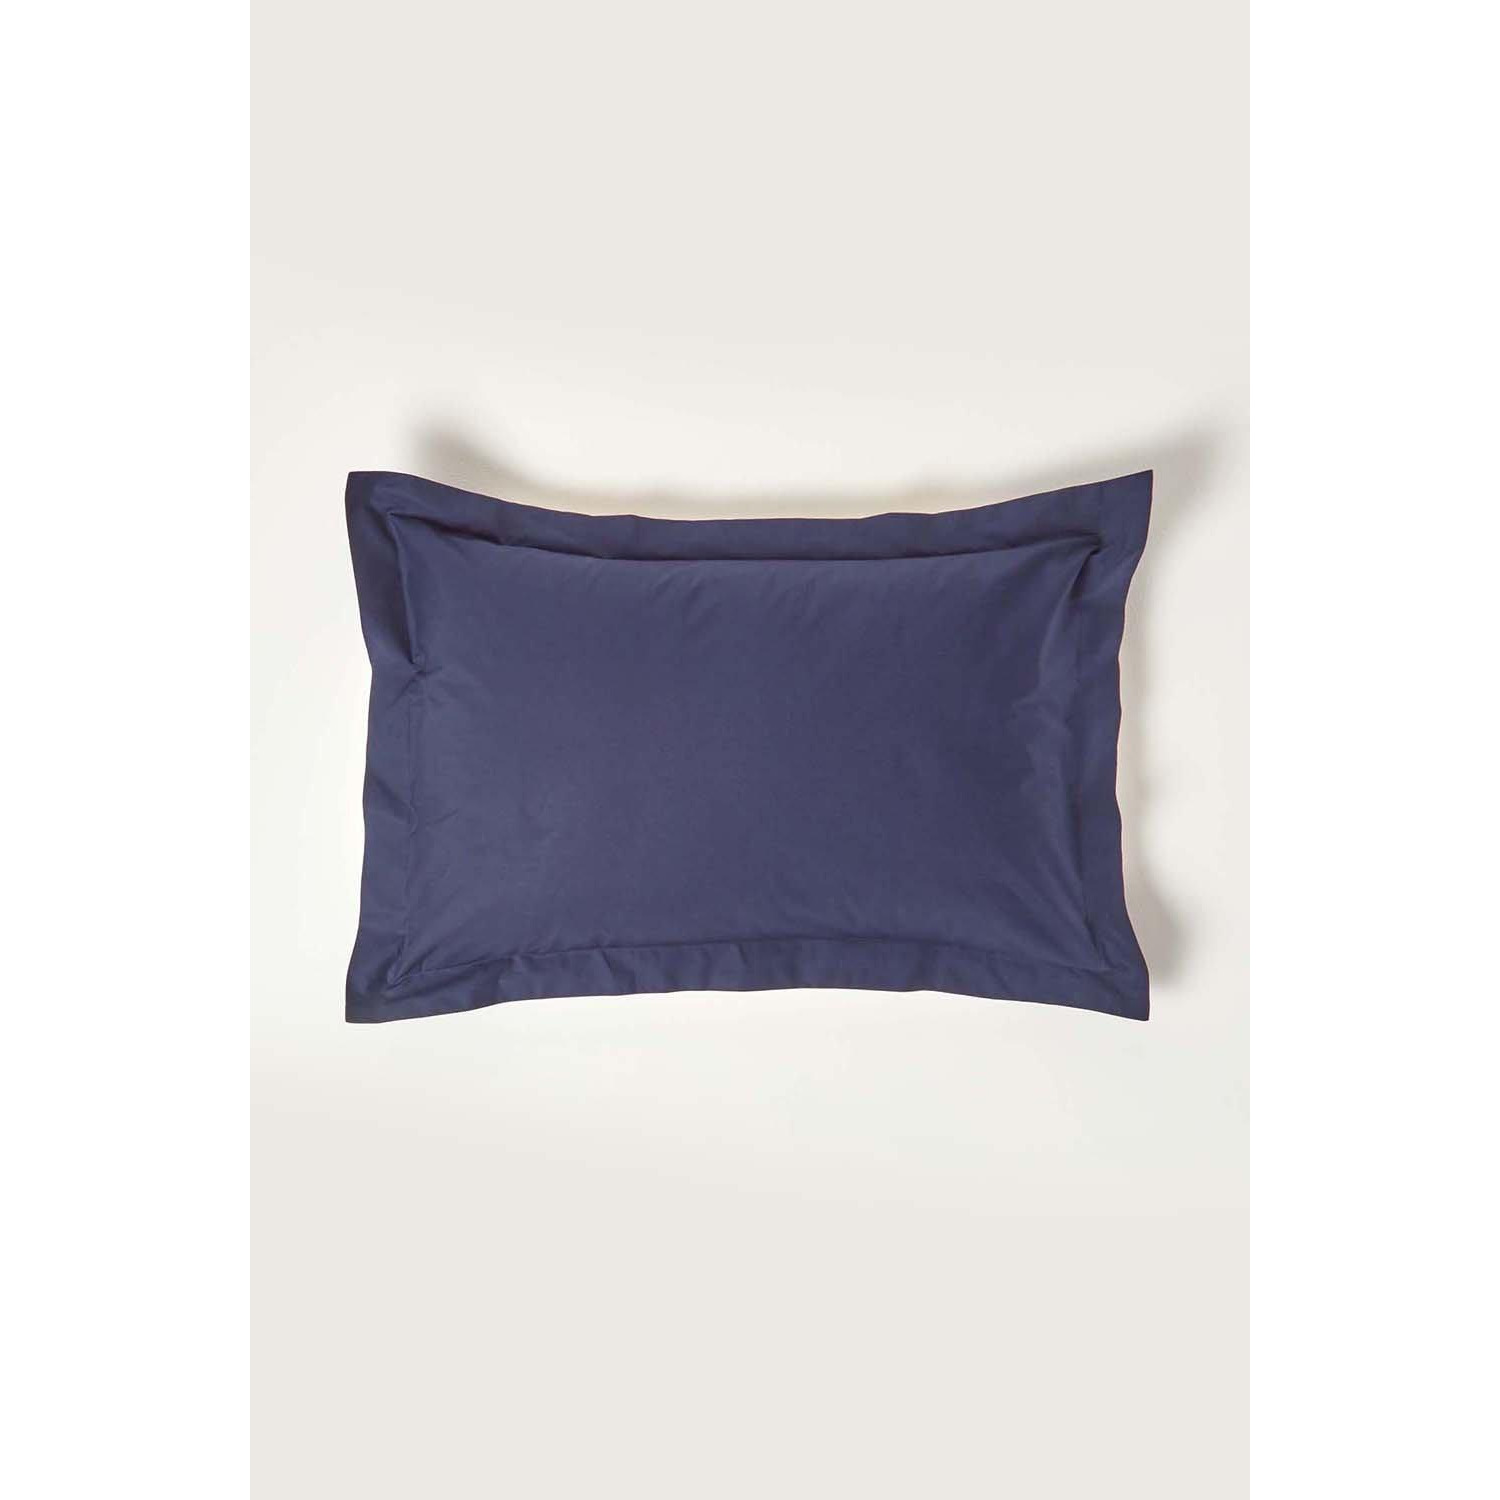 Egyptian Cotton Oxford Pillowcase 200 TC, Standard Size - image 1